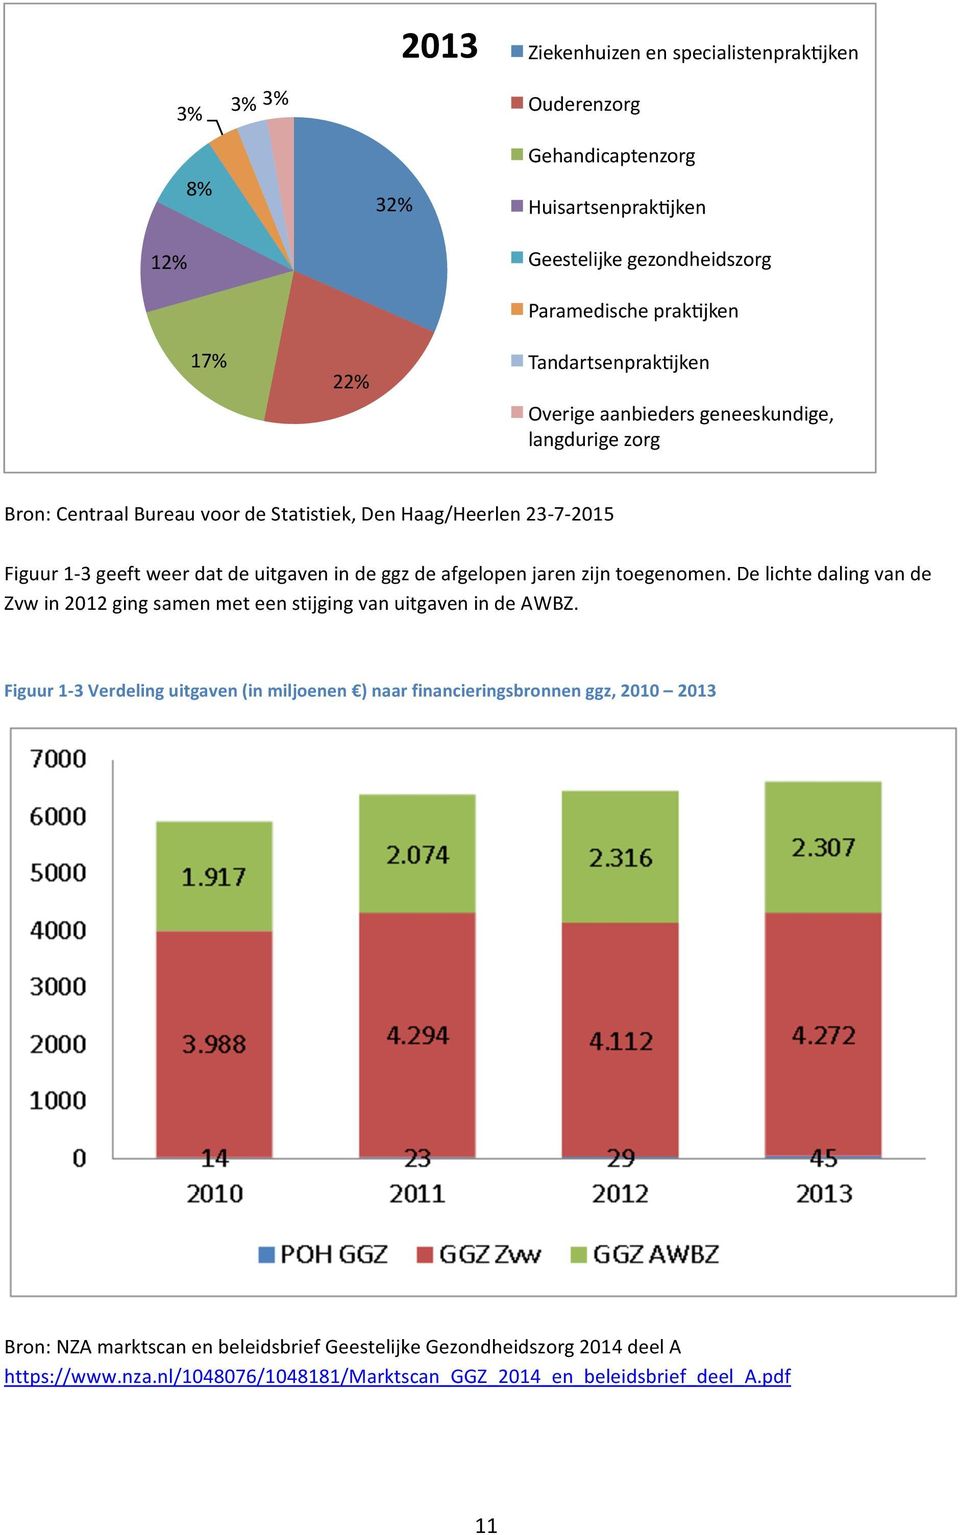 de ggz de afgelopen jaren zijn toegenomen. De lichte daling van de Zvw in 2012 ging samen met een stijging van uitgaven in de AWBZ.